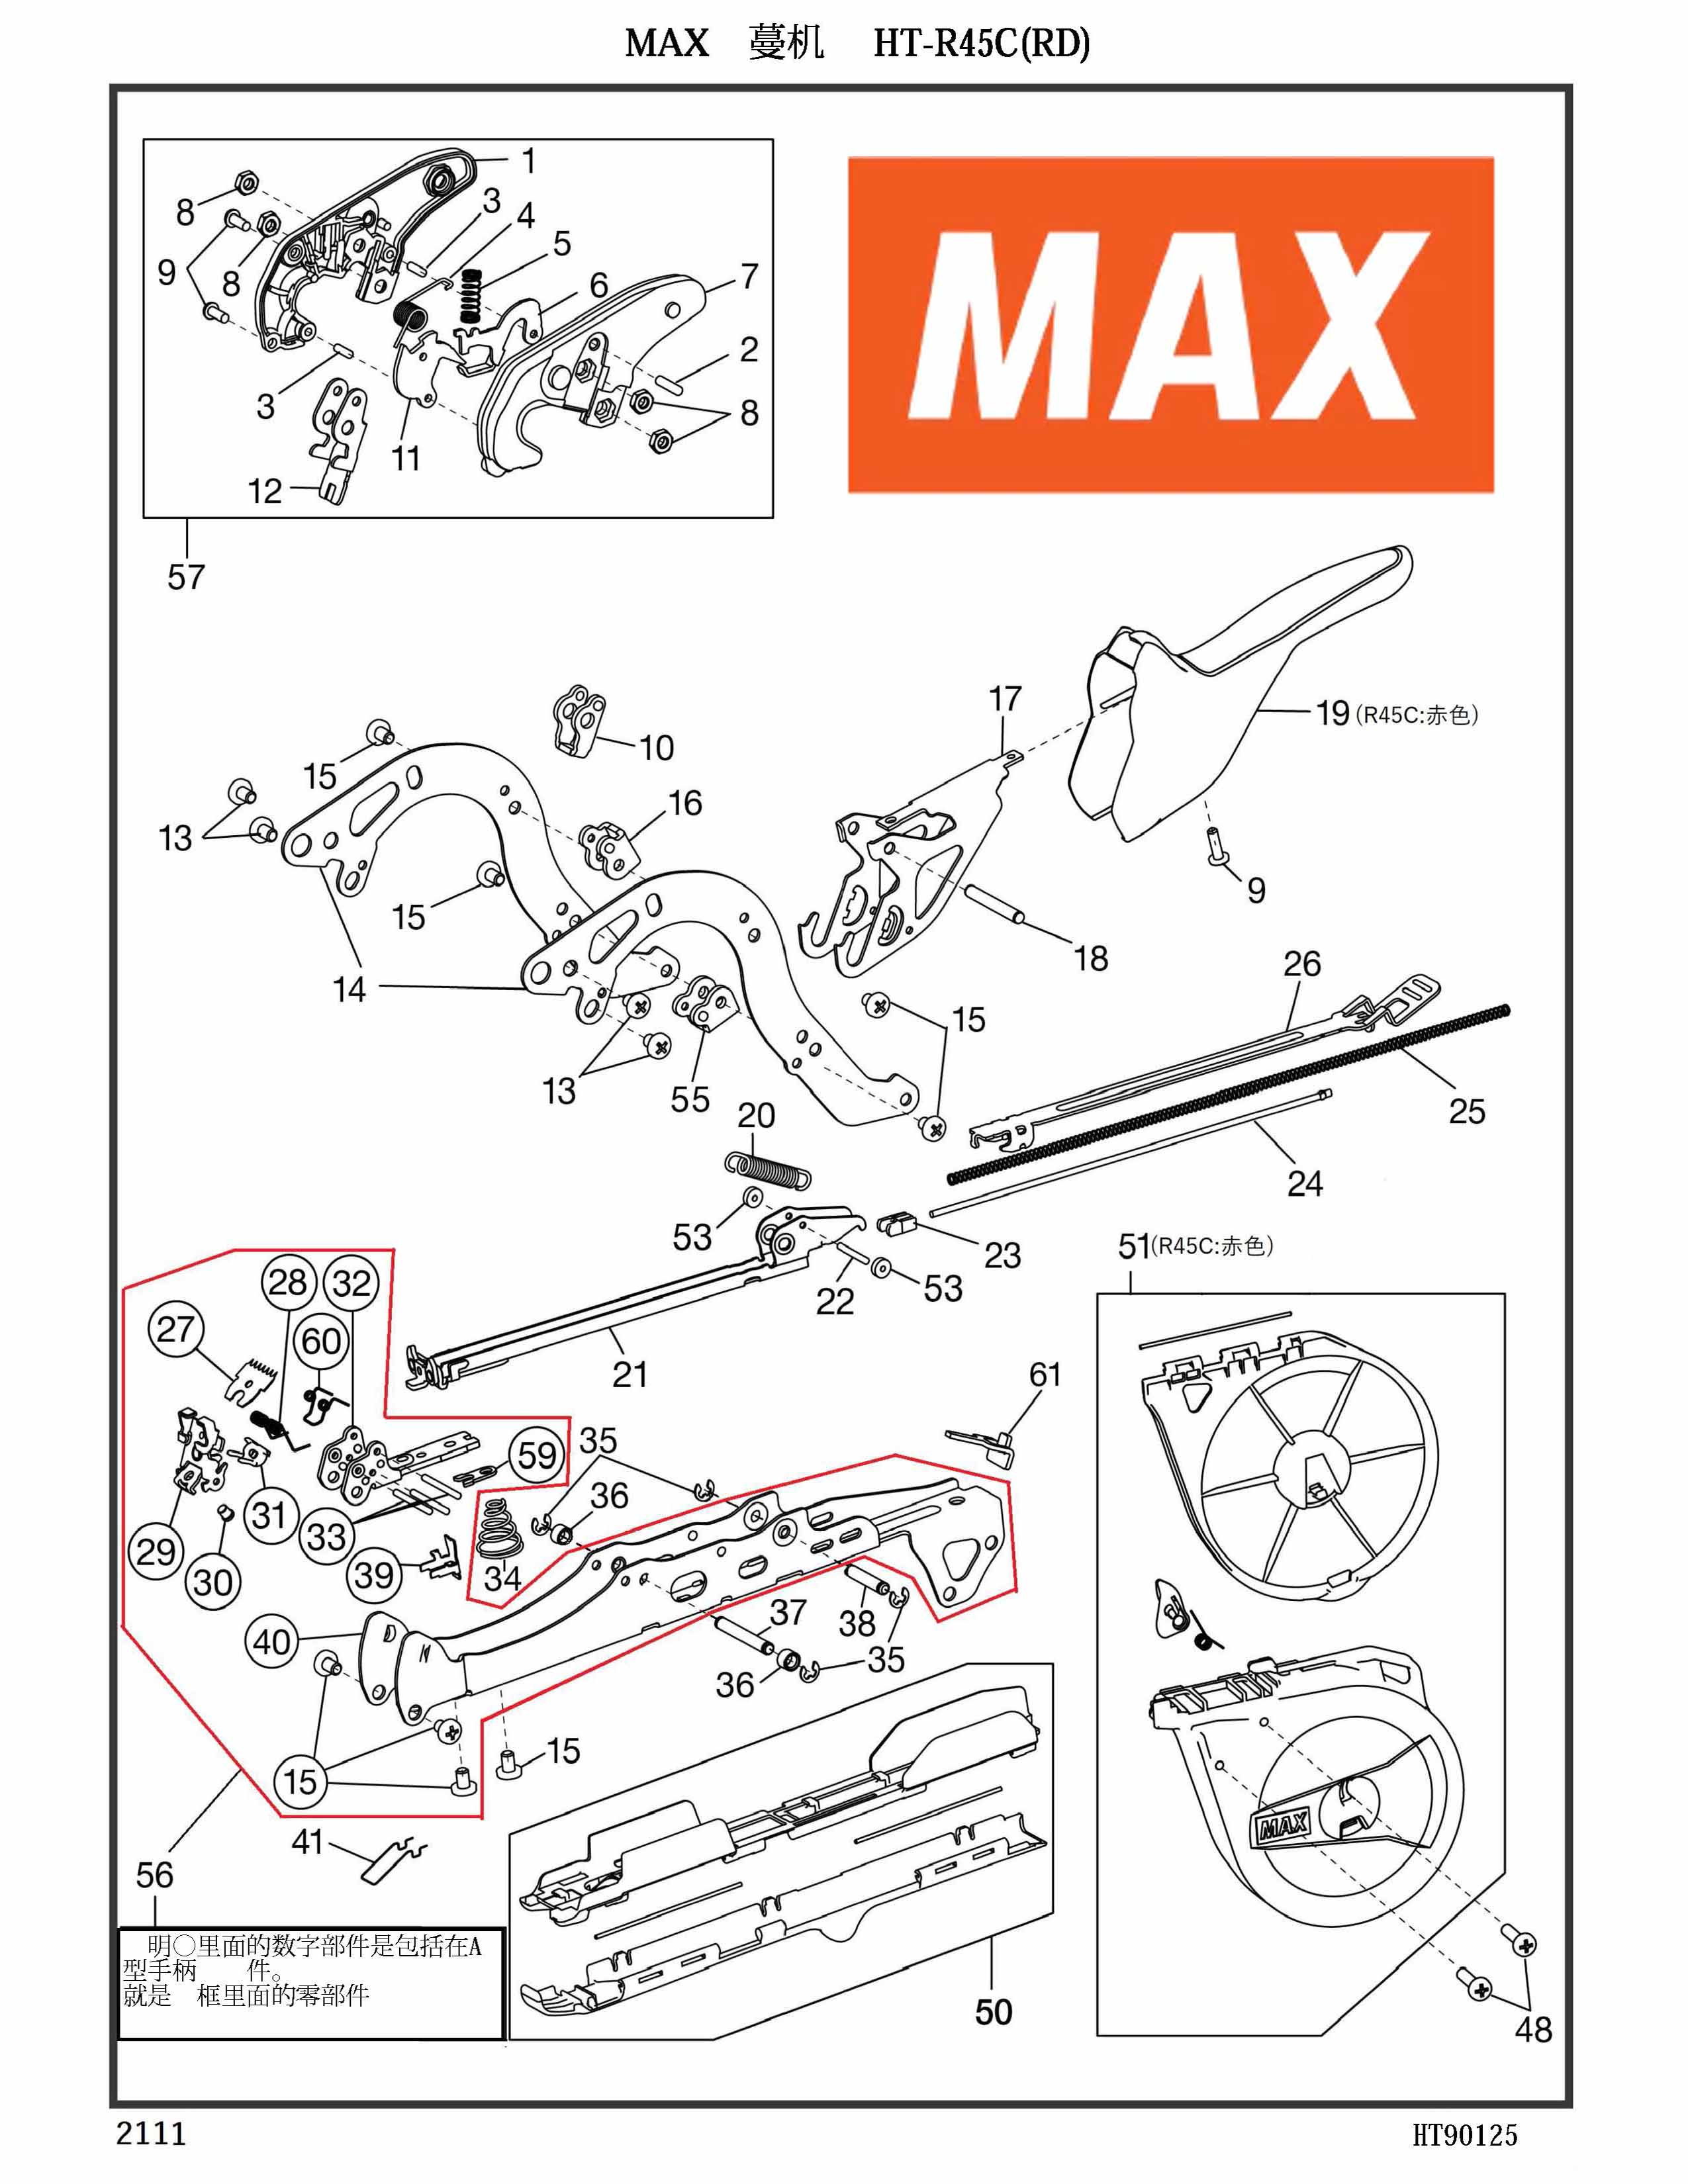 MAX Tapener Part AA05719 SCREW BIND 3X8 (P) Fits MAX HT-R45L(O) R45C(RD) HT-R1 HT-R2 #9